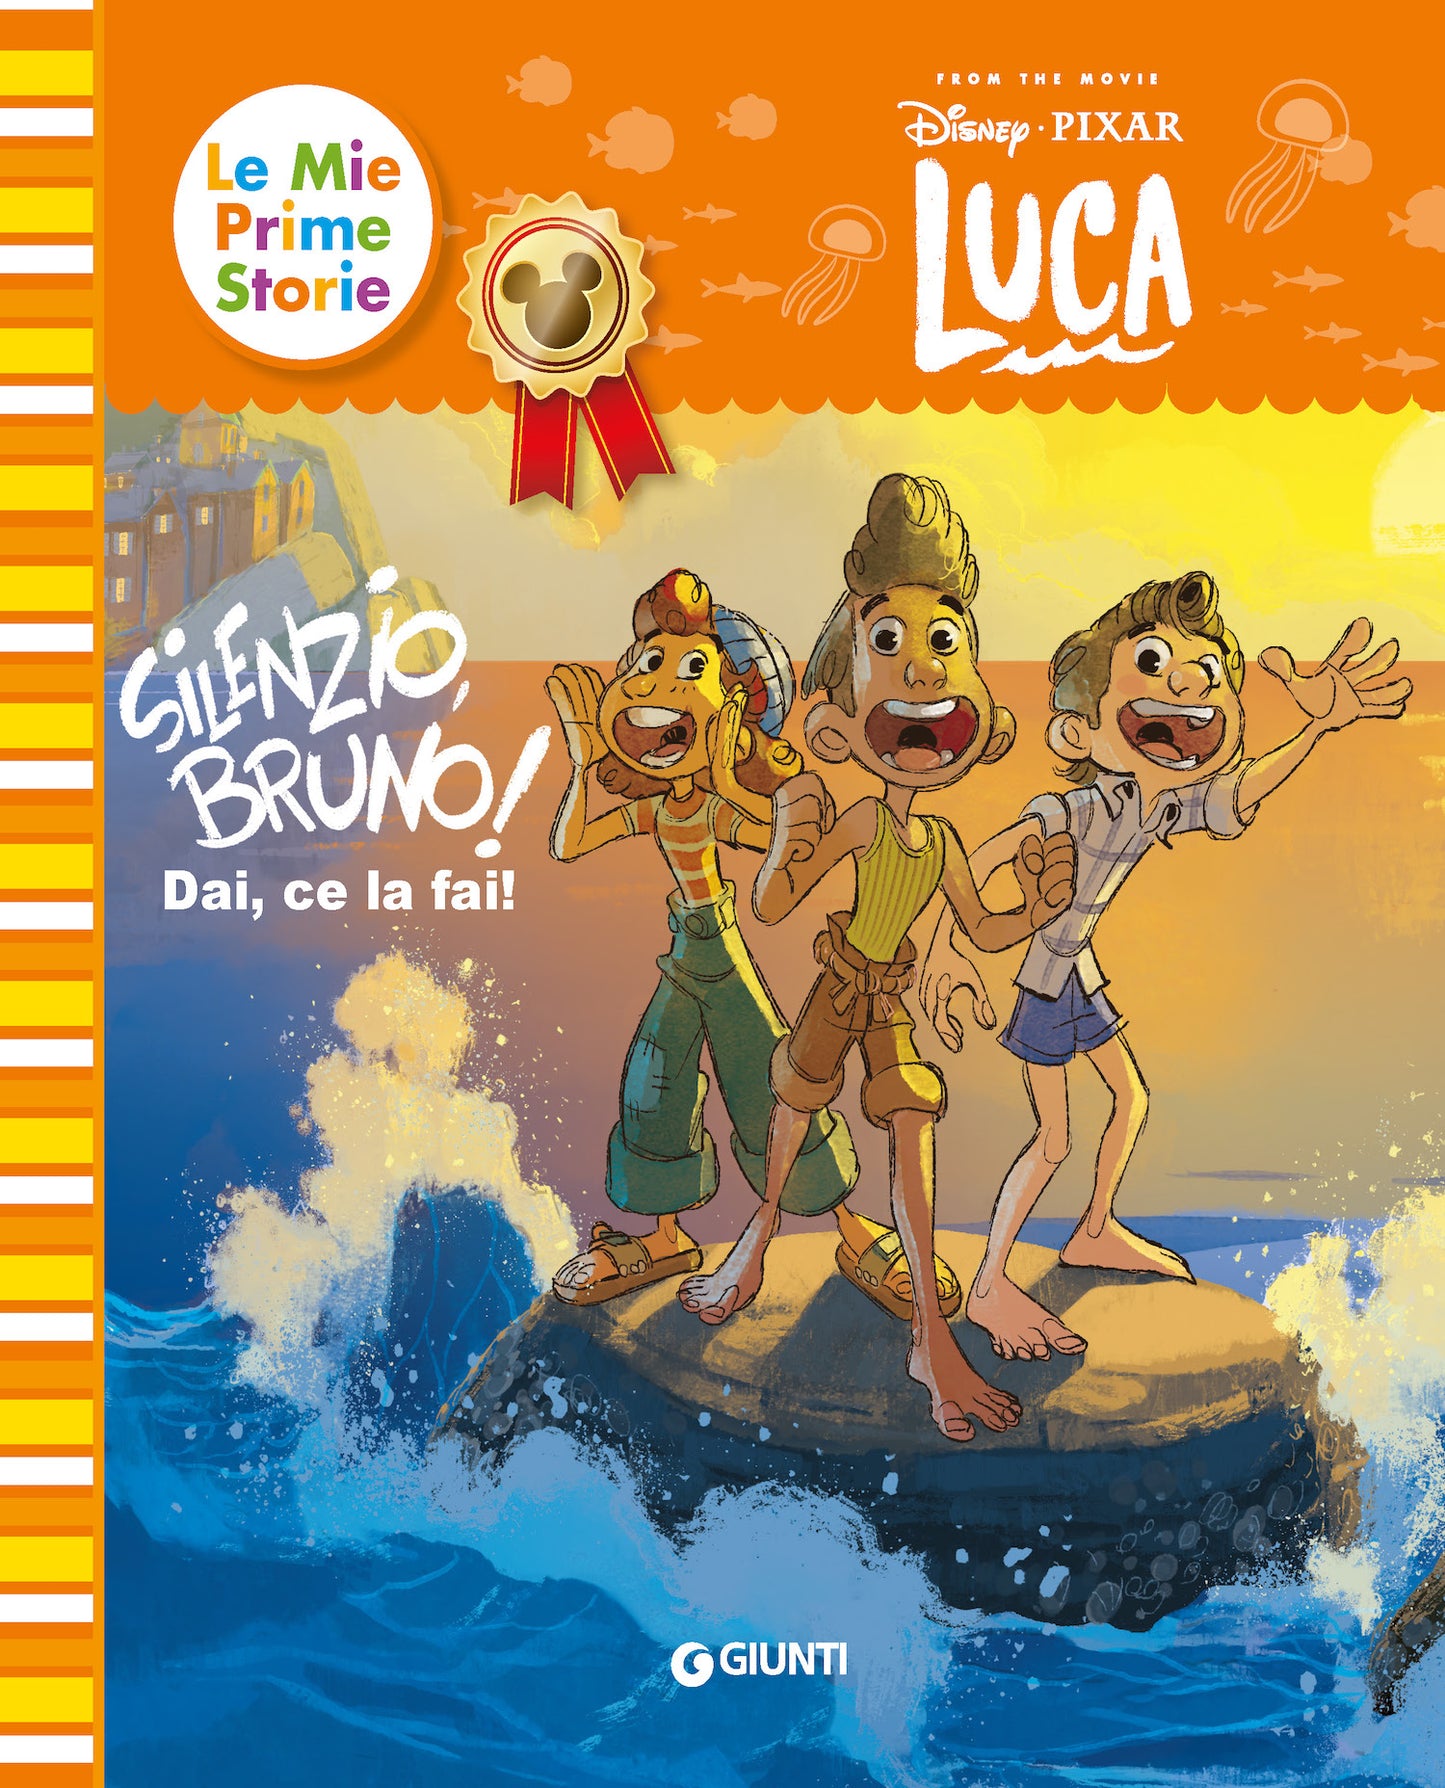 Silenzio Bruno! Luca Disney/Pixar - Le mie prime storie. Dai che ce la fai!